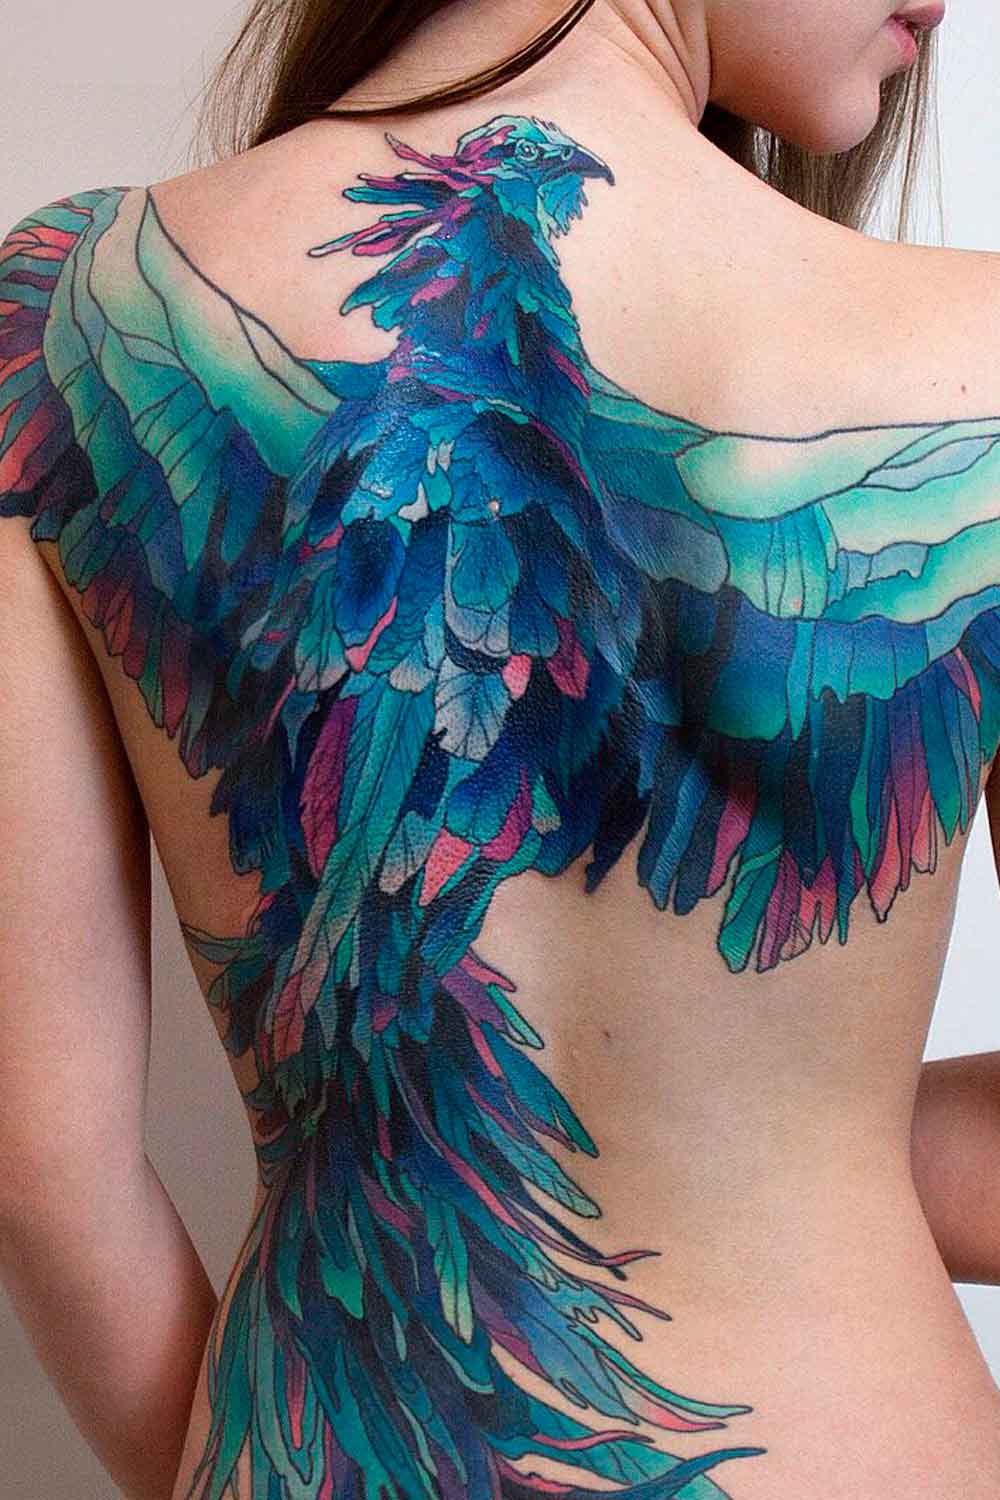 phoenix-tattoos-for-women-full-back-tattoo-artist | Phoenix tattoo, Phoenix  tattoo design, Full back tattoos